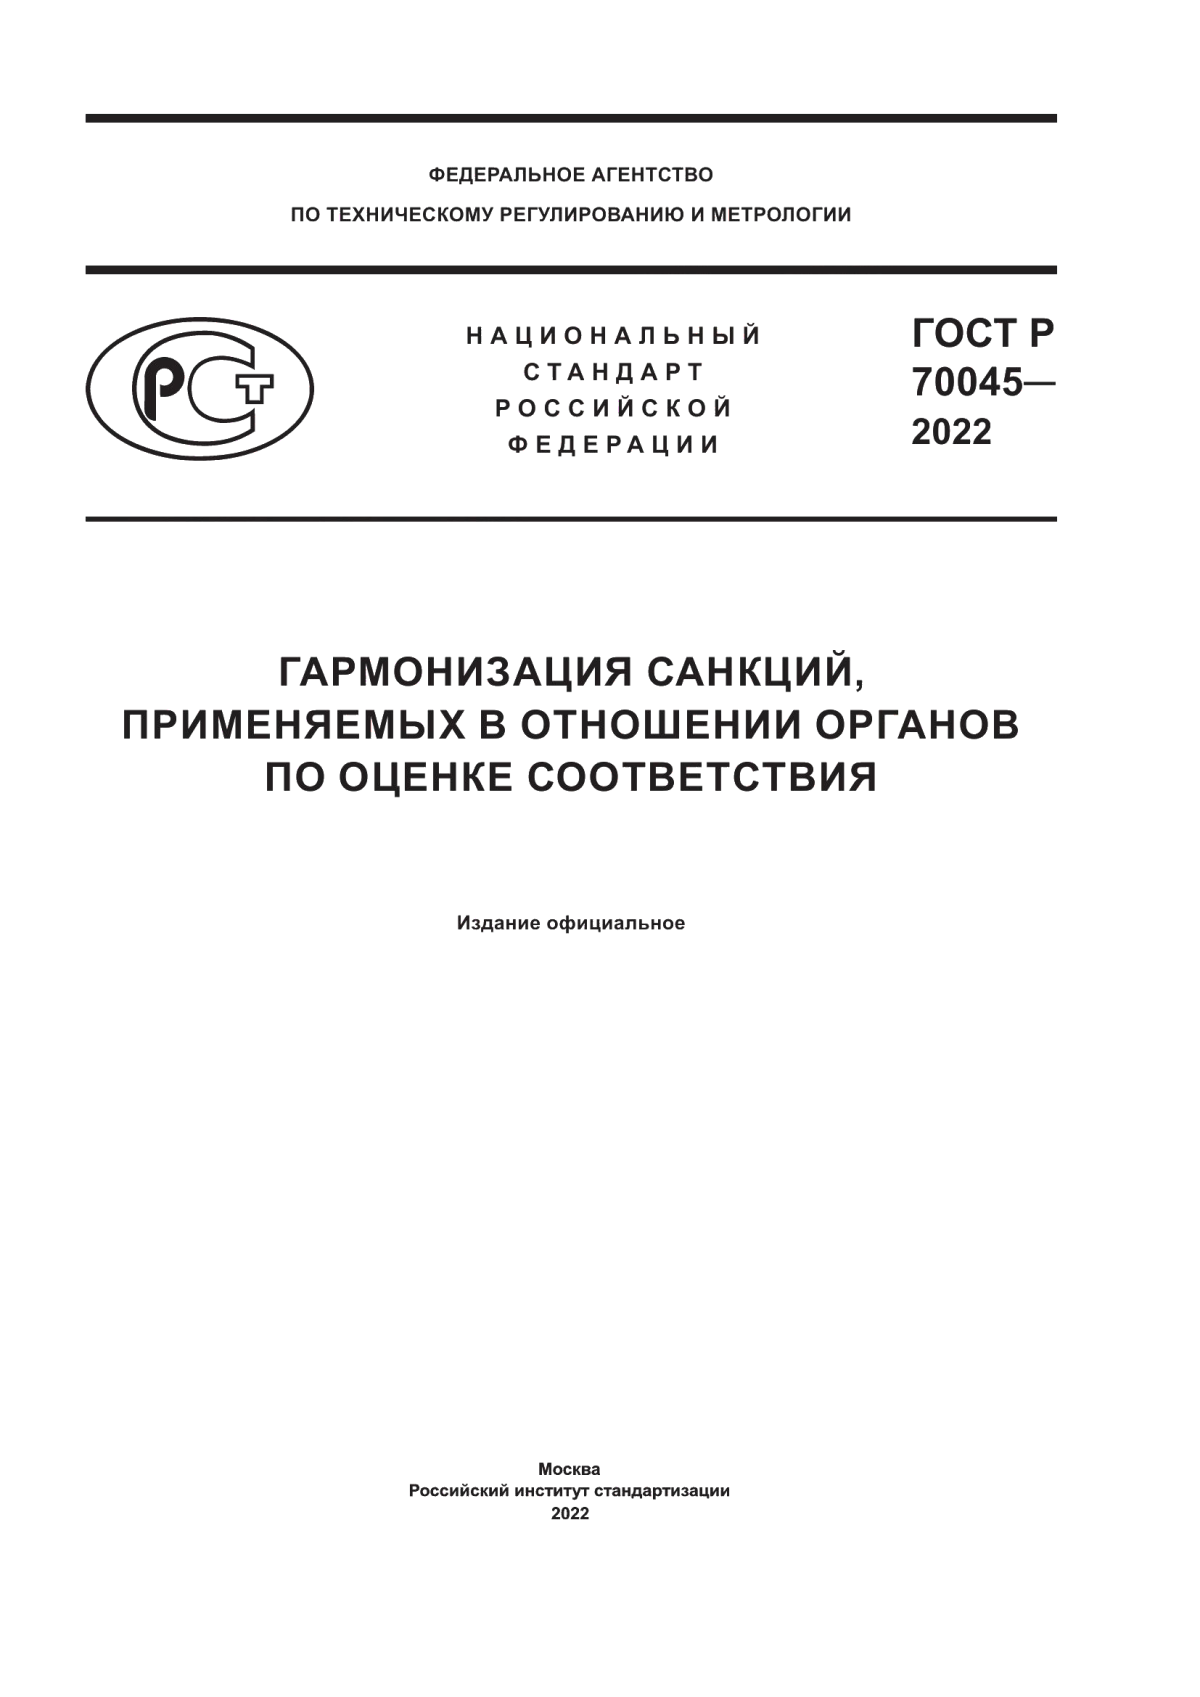 ГОСТ Р 70045-2022 Гармонизация санкций, применяемых в отношении органов по оценке соответствия